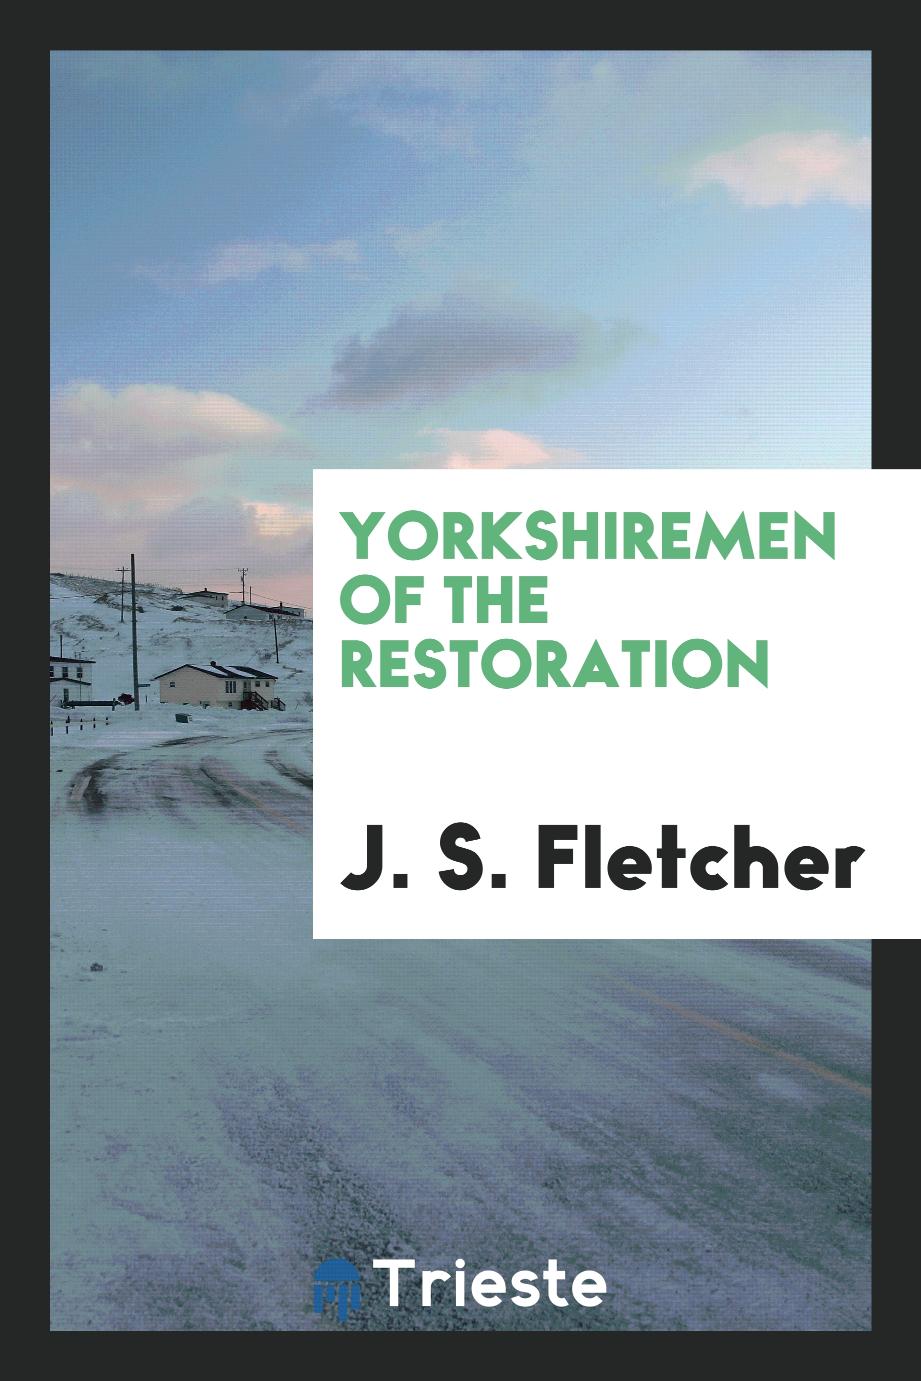 Yorkshiremen of the restoration